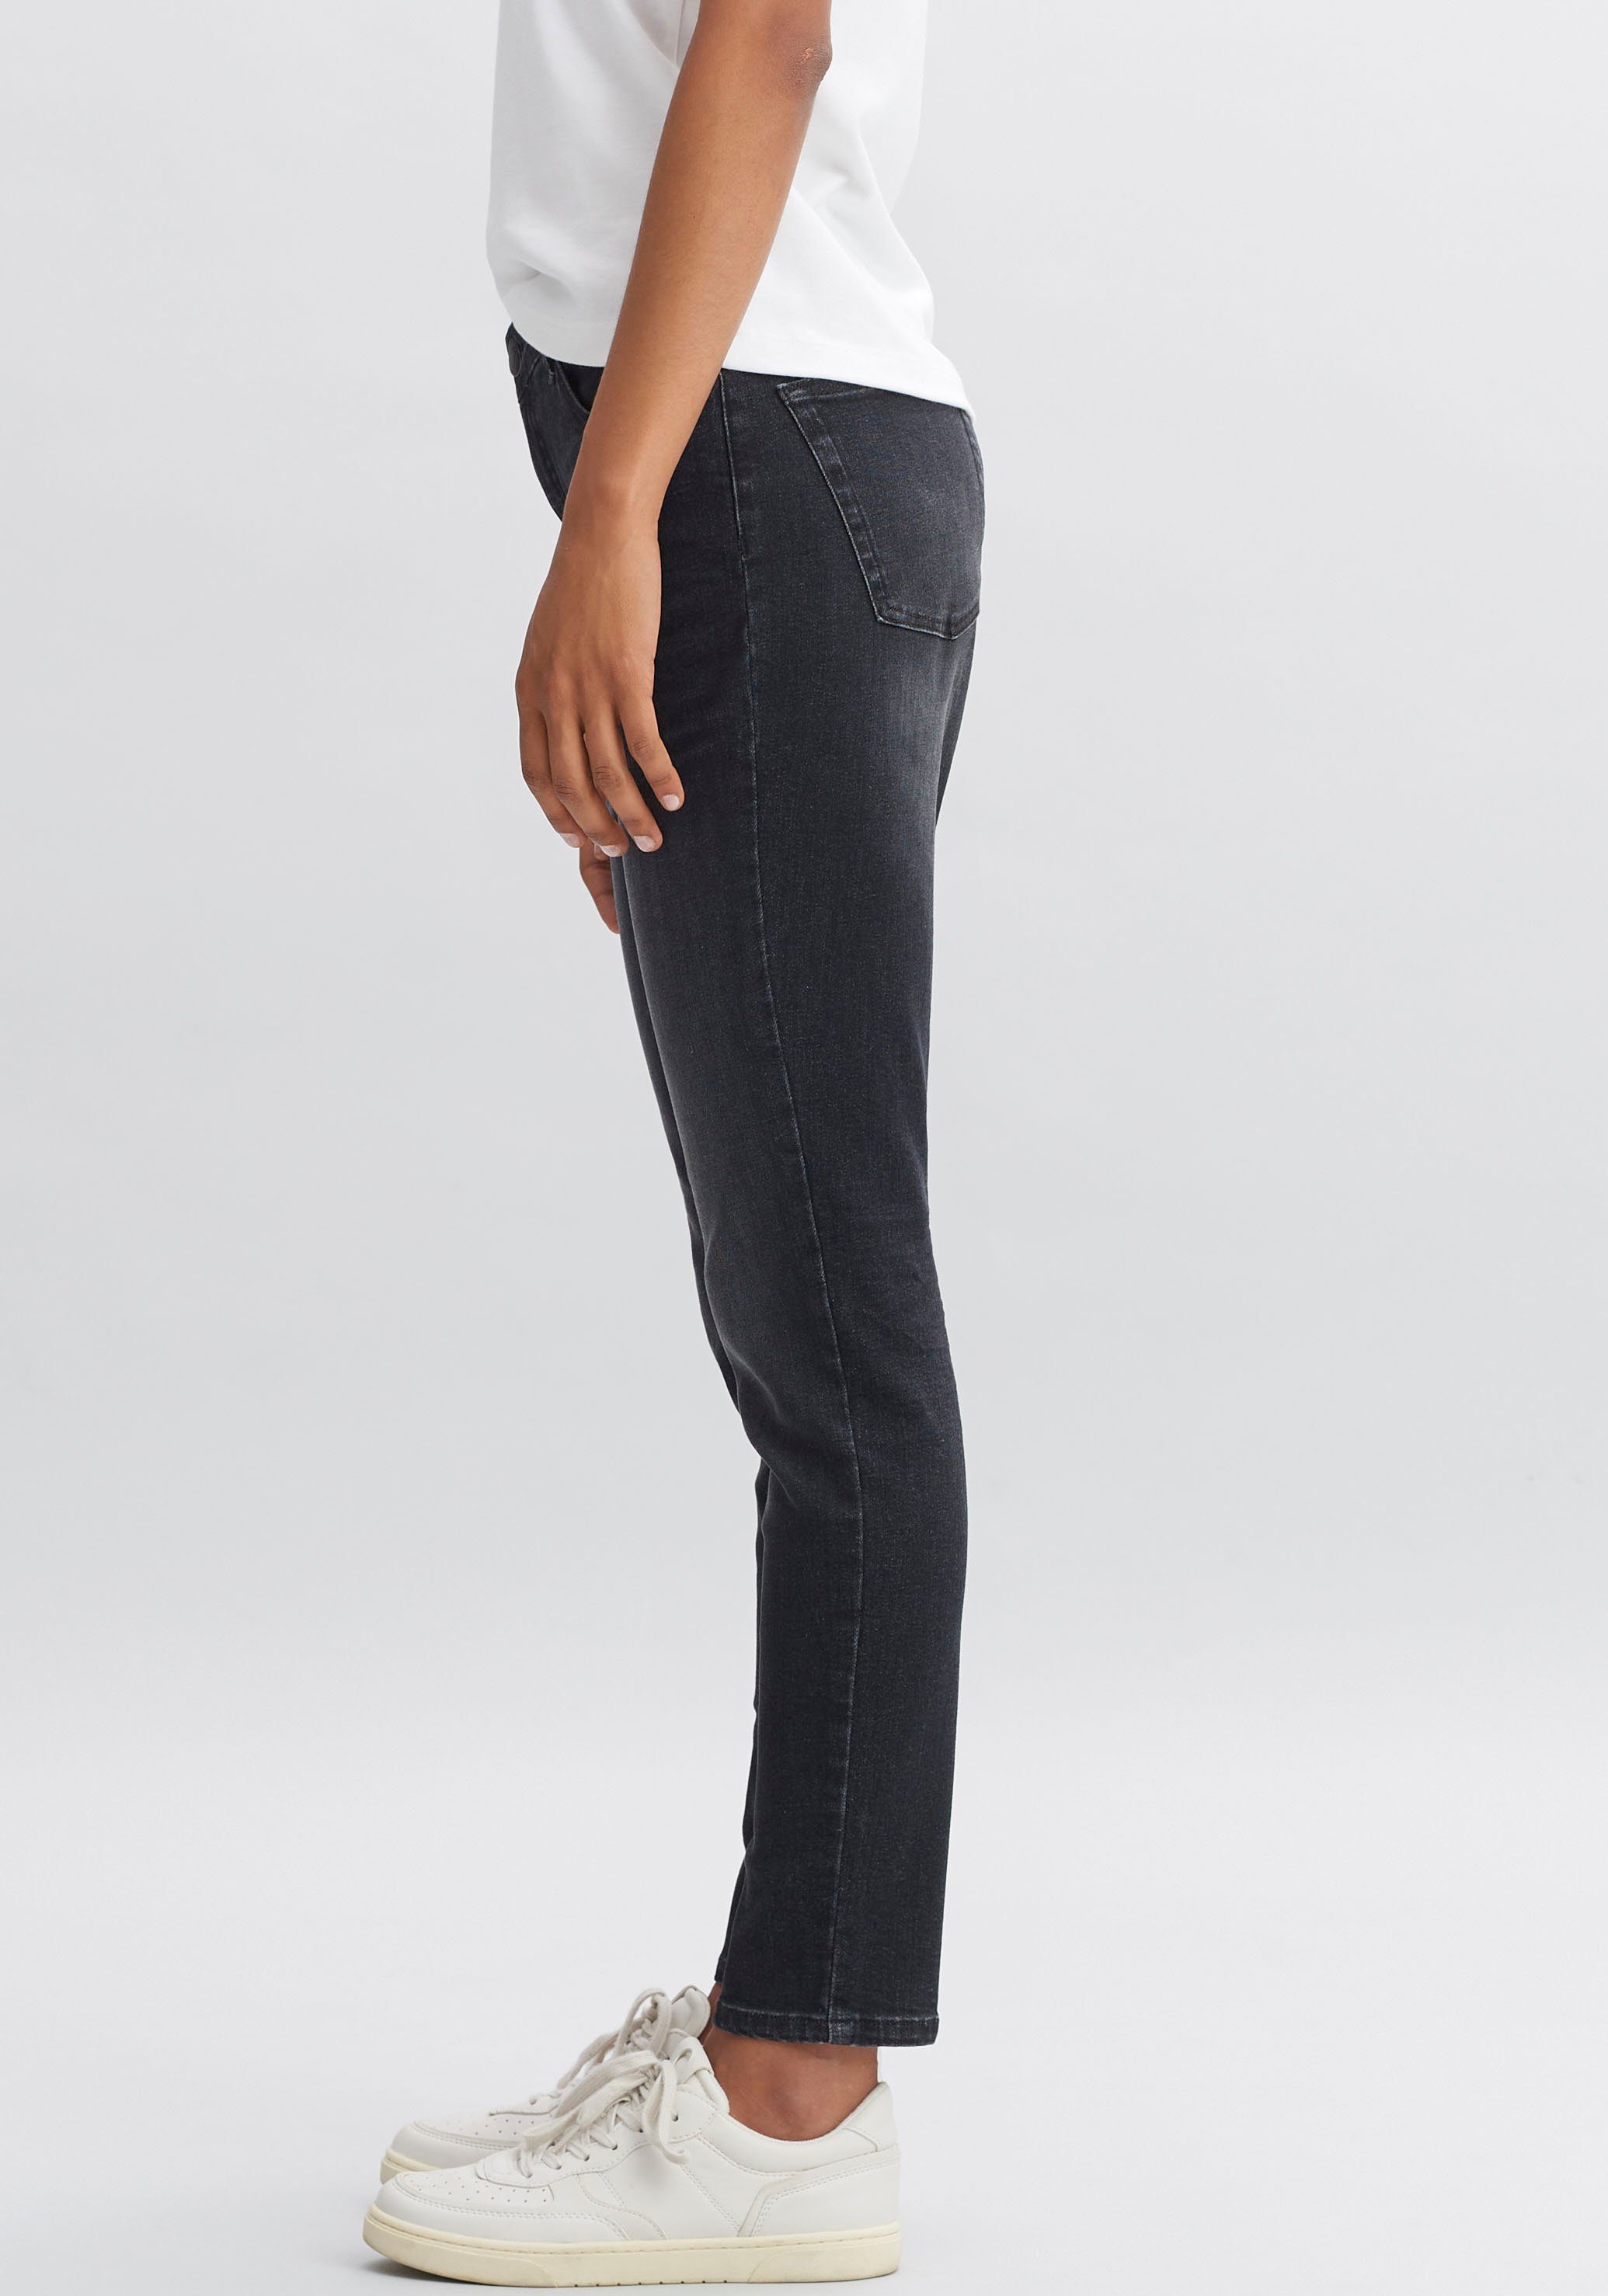 Look authentischen, roughen OPUS Evita Slim-fit-Jeans im